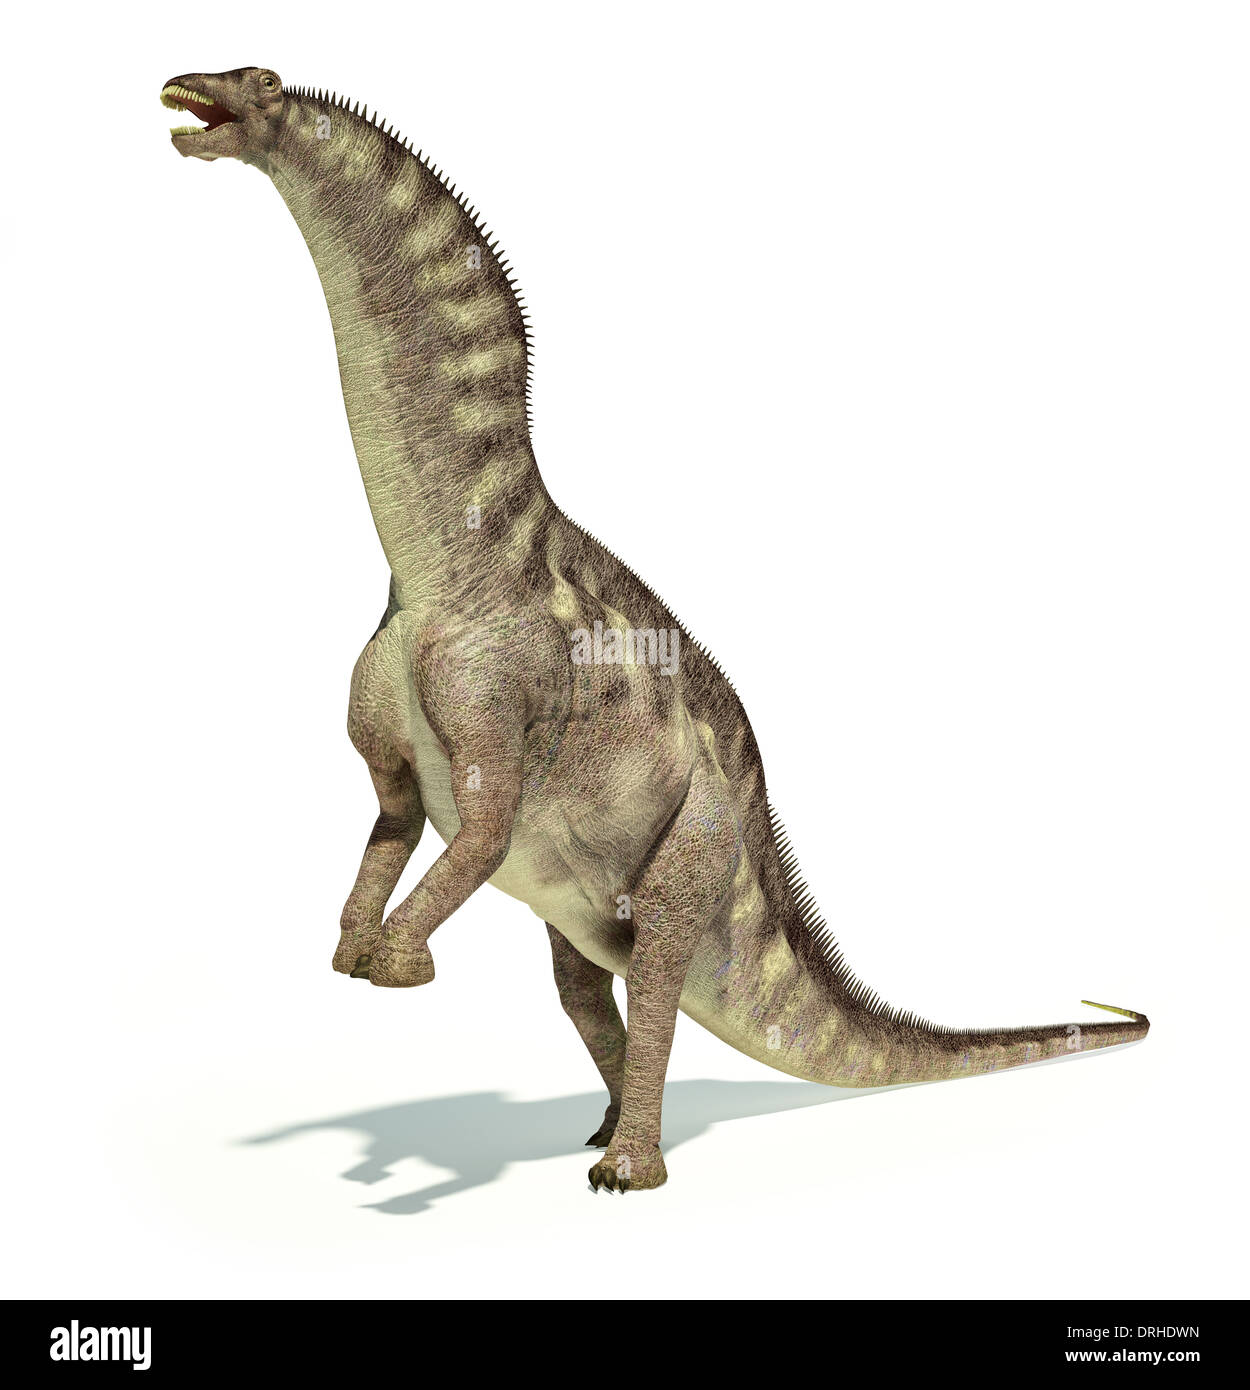 Photo-réalistes et d'une représentation scientifiquement correcte Amargasaurus dinosaure. La posture dynamique. Sur fond blanc. Banque D'Images